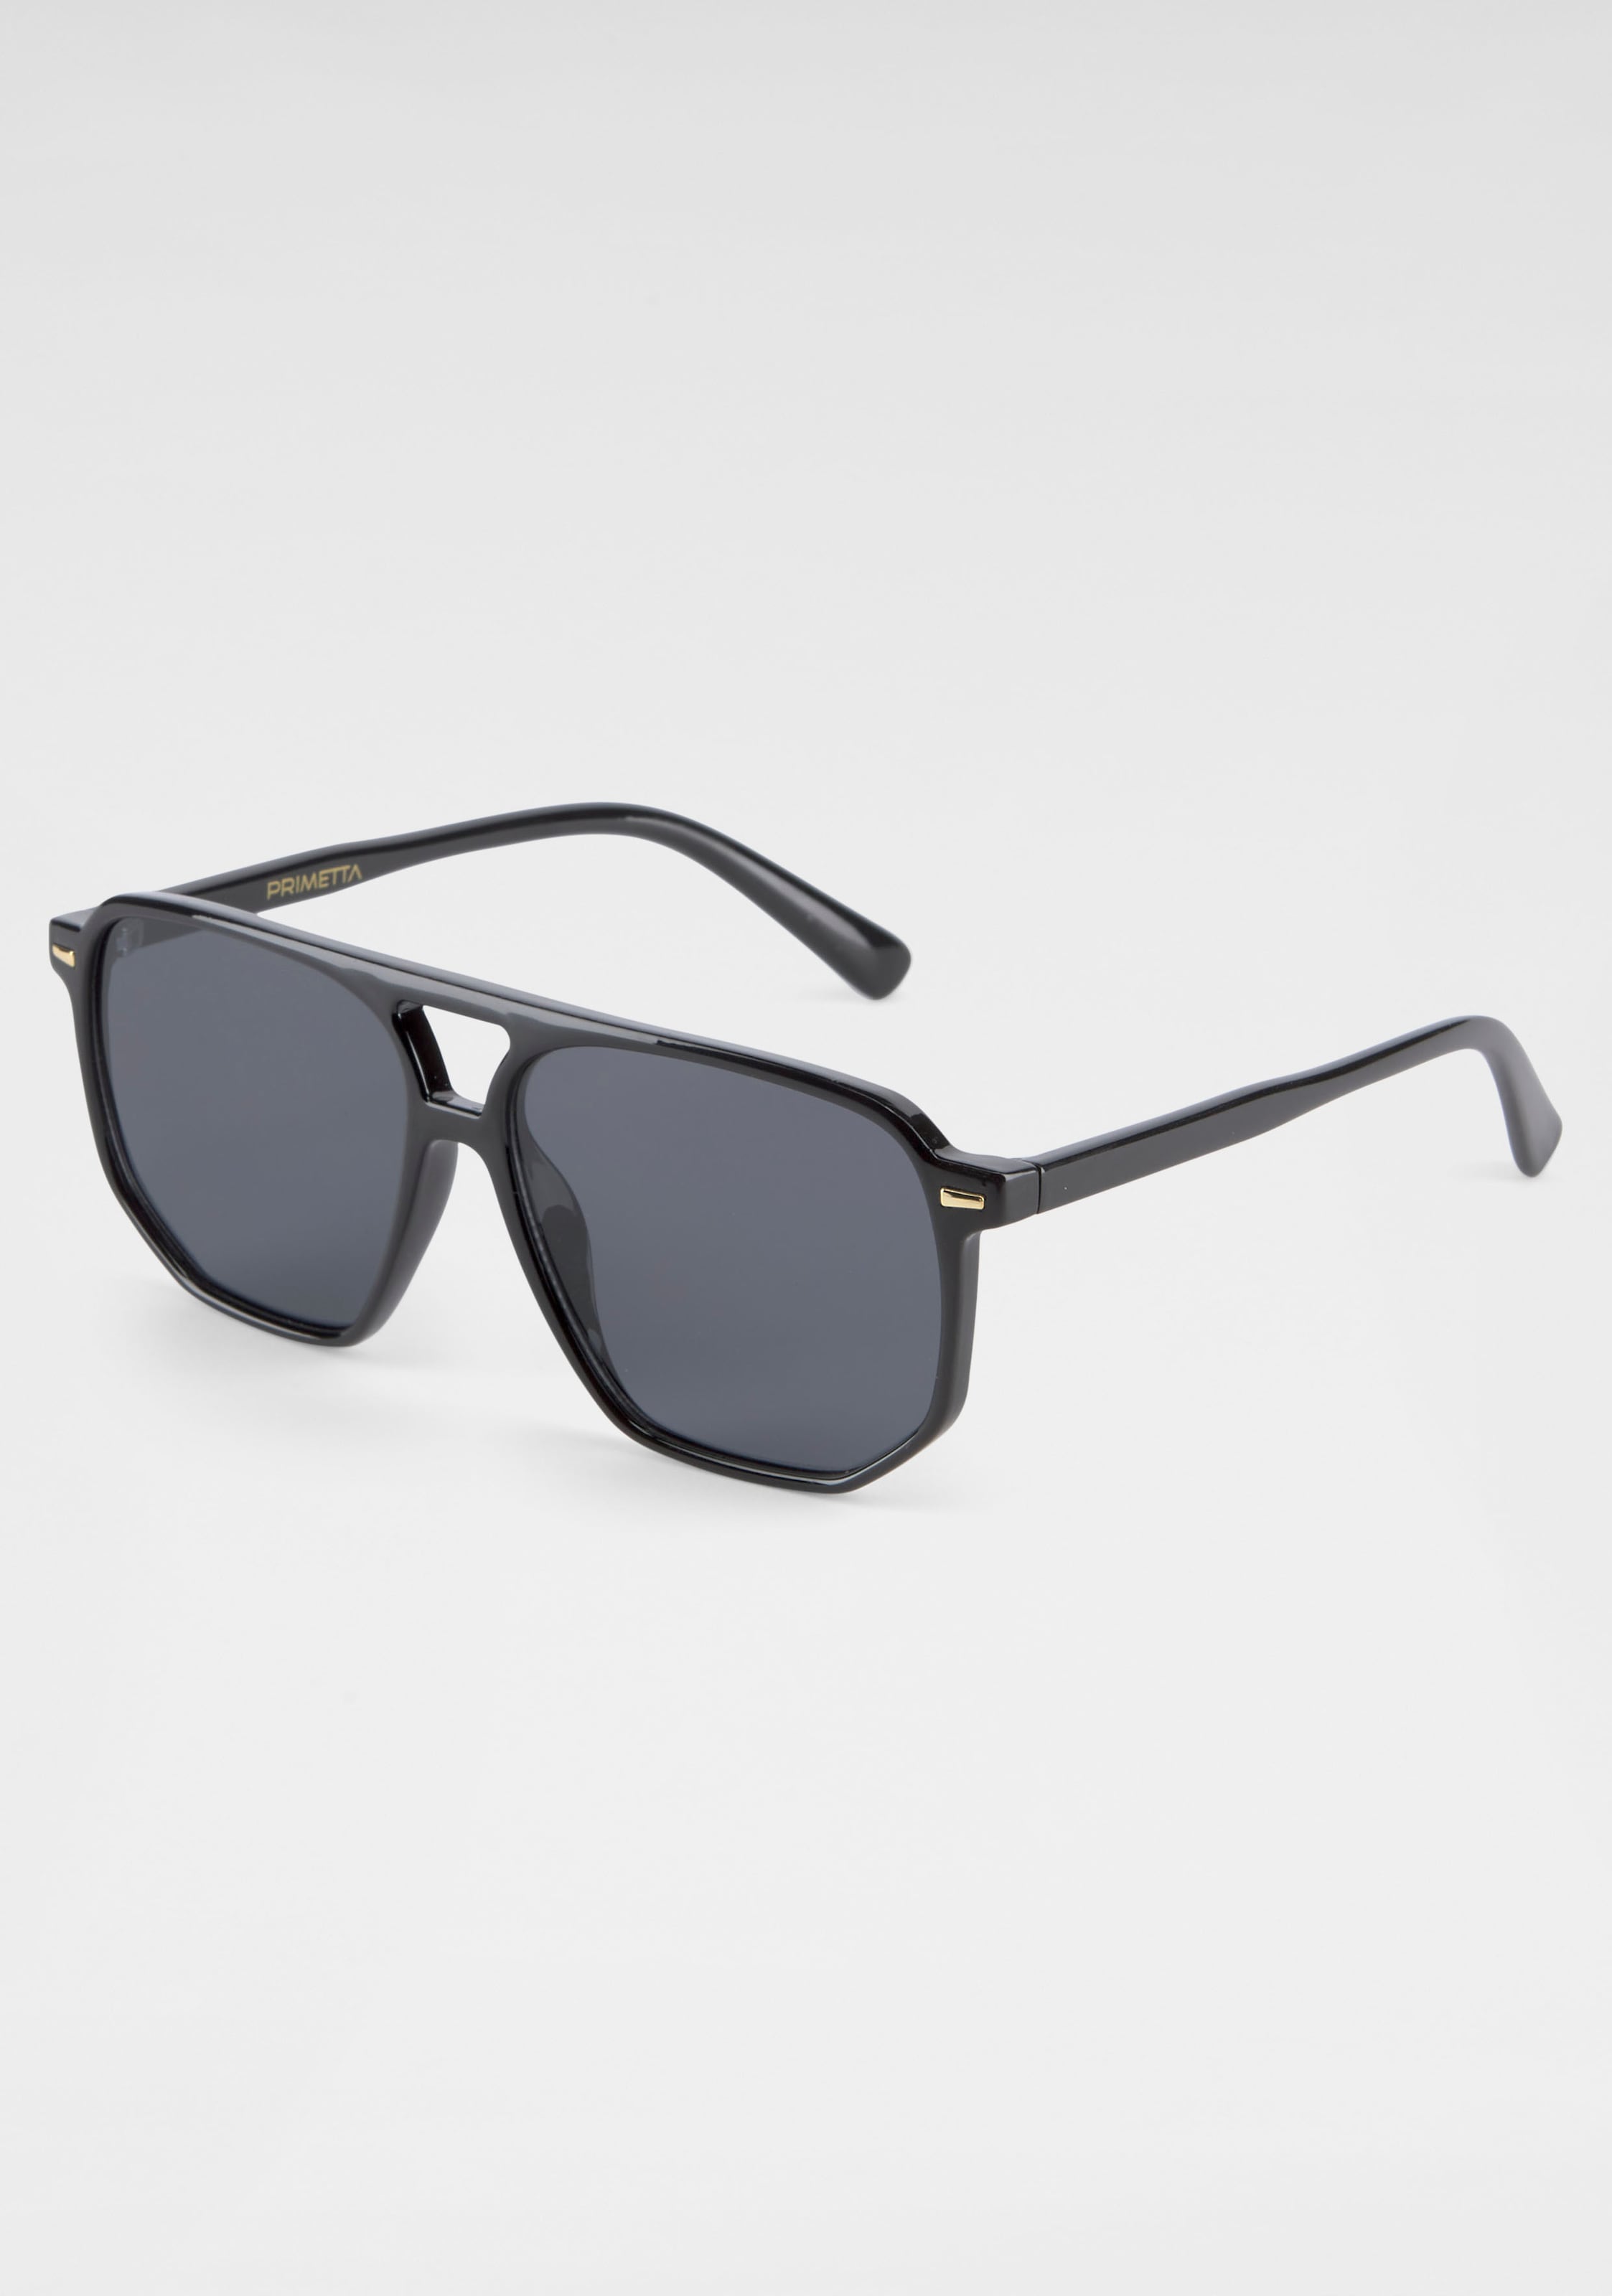 YOUNG SPIRIT LONDON Eyewear Sonnenbrille, bei OTTO Vollrand-Sonnenbrille Trendige online bestellen